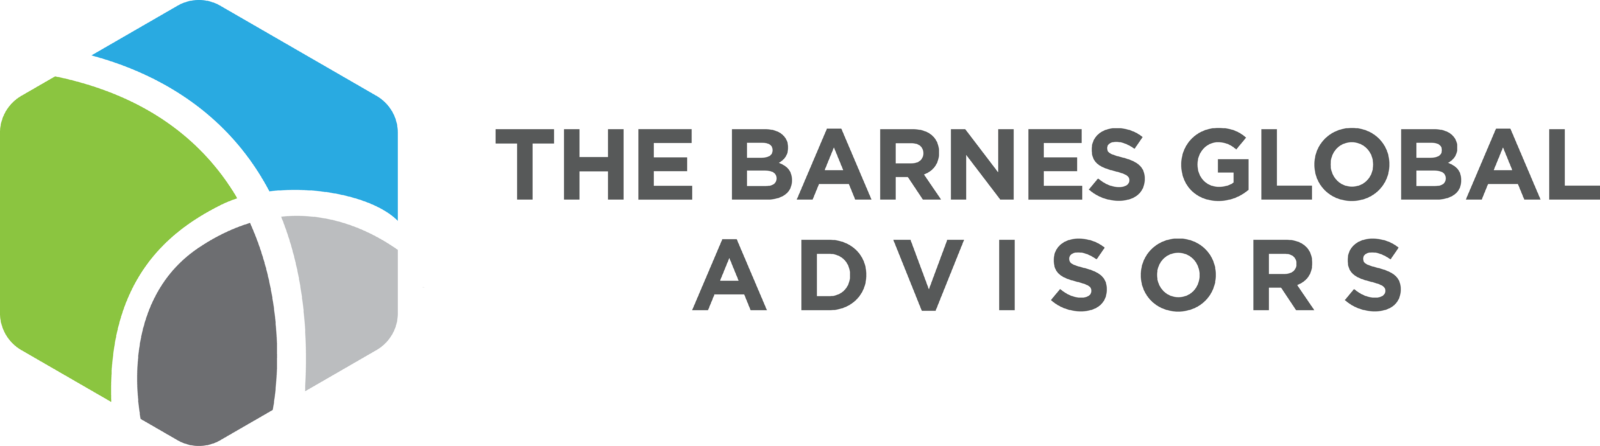 The Barnes Global Advisors